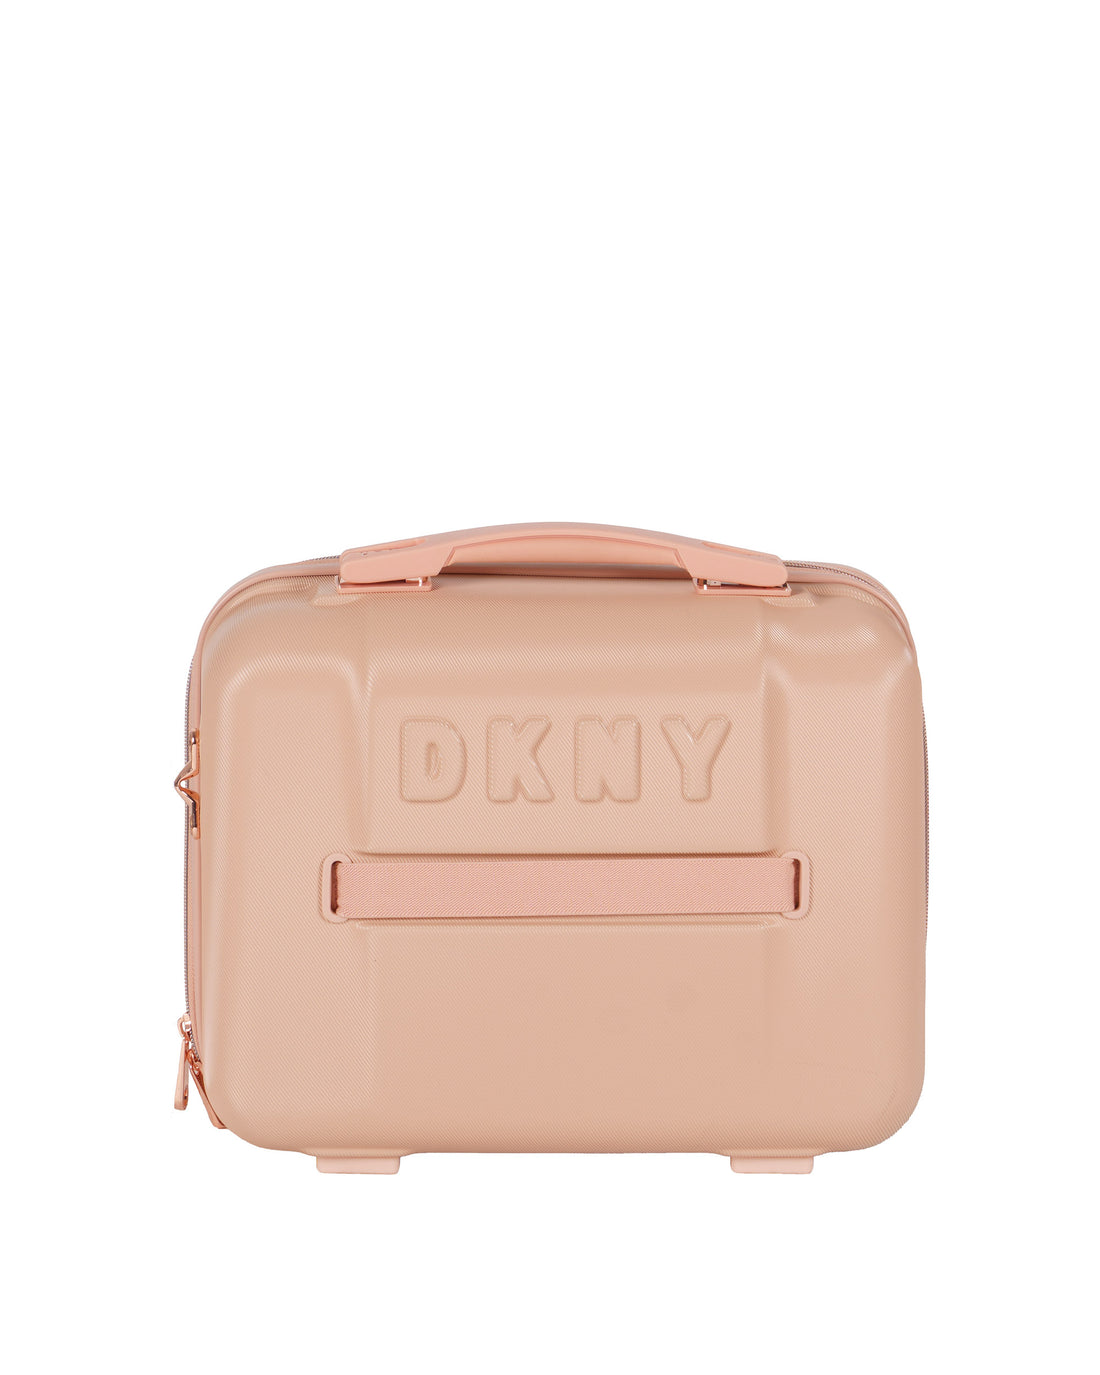 DKNY Rose Gold Beauty Case